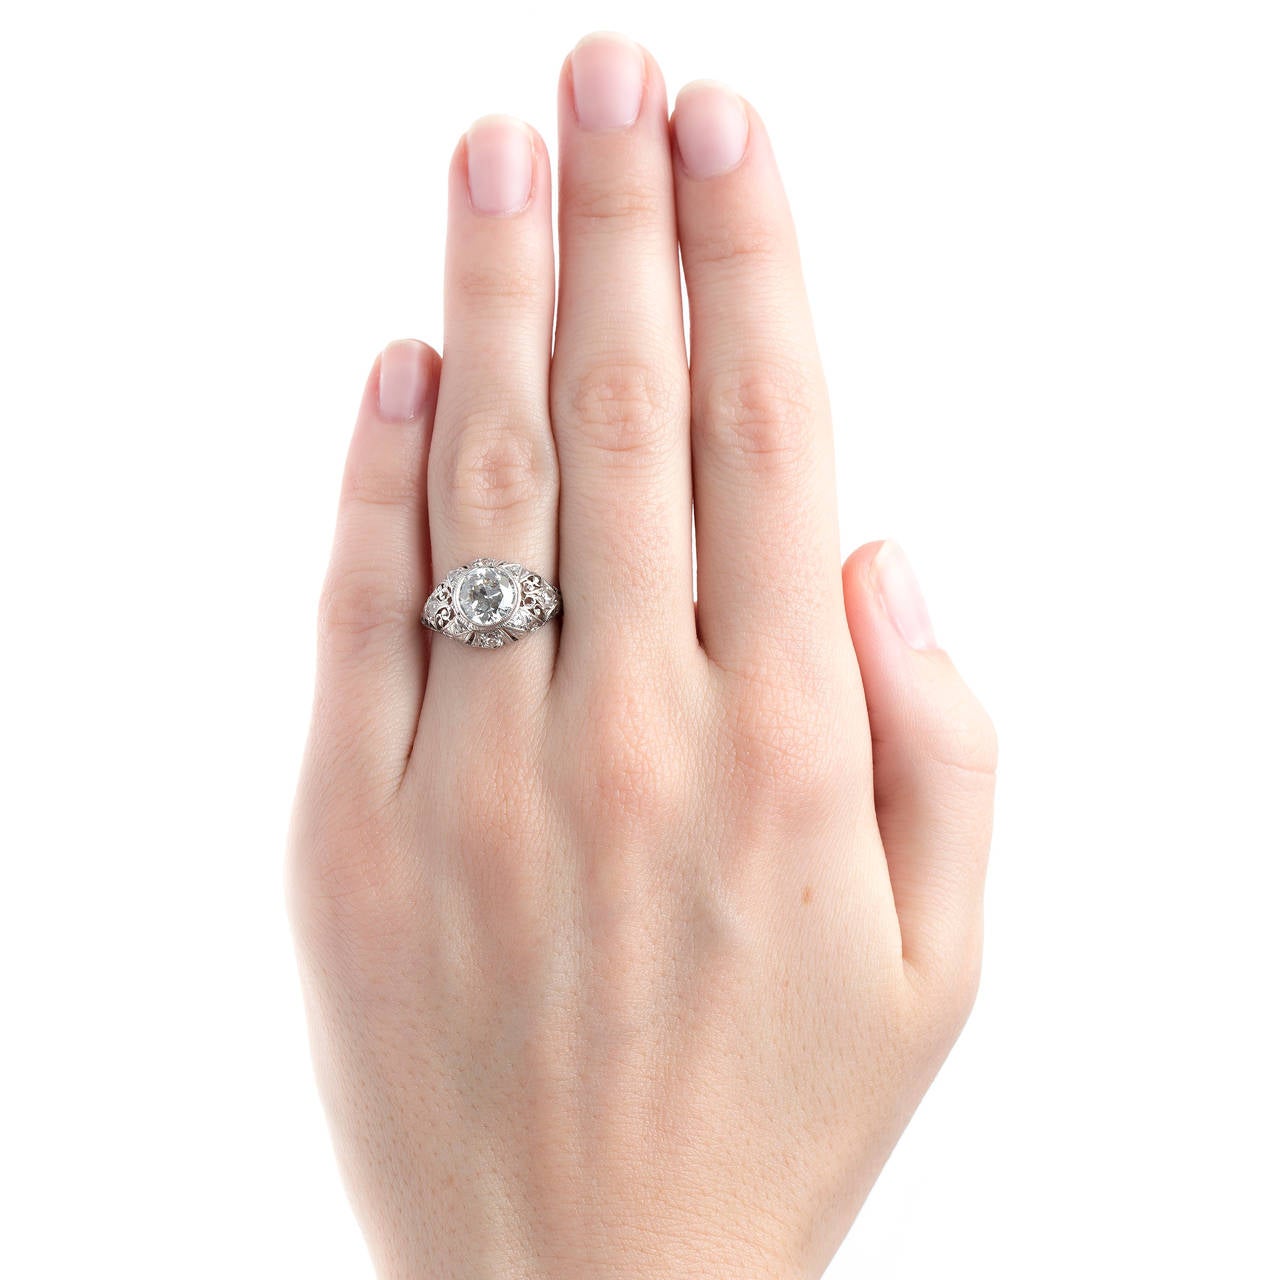 Spectacular Edwardian Era Engagement Ring with Feminine Filigree 1